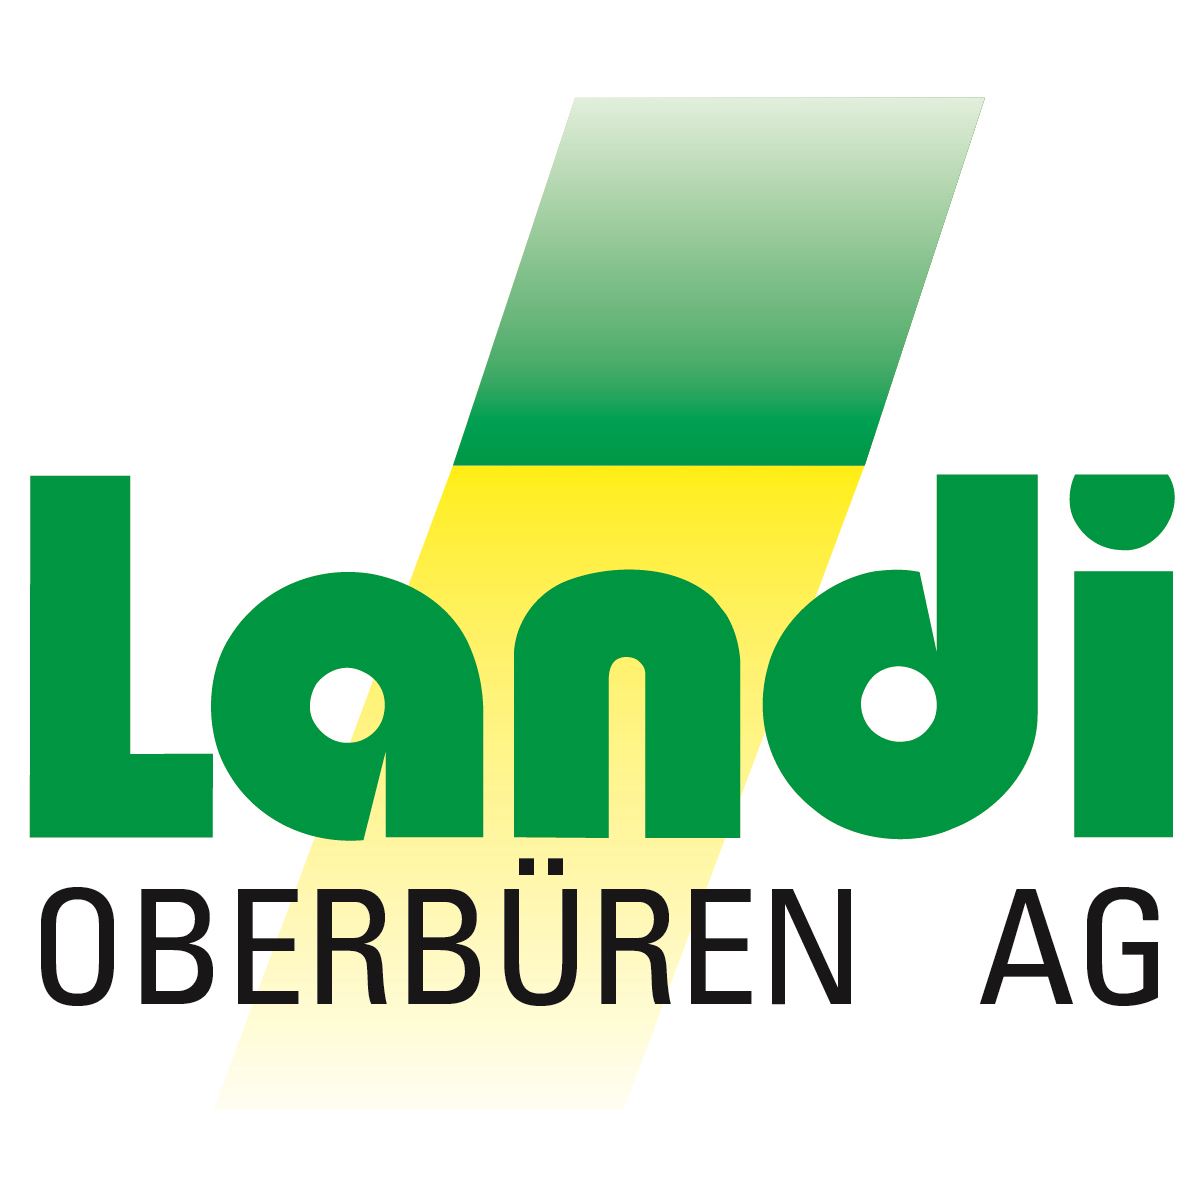 Landi Oberbüren AG